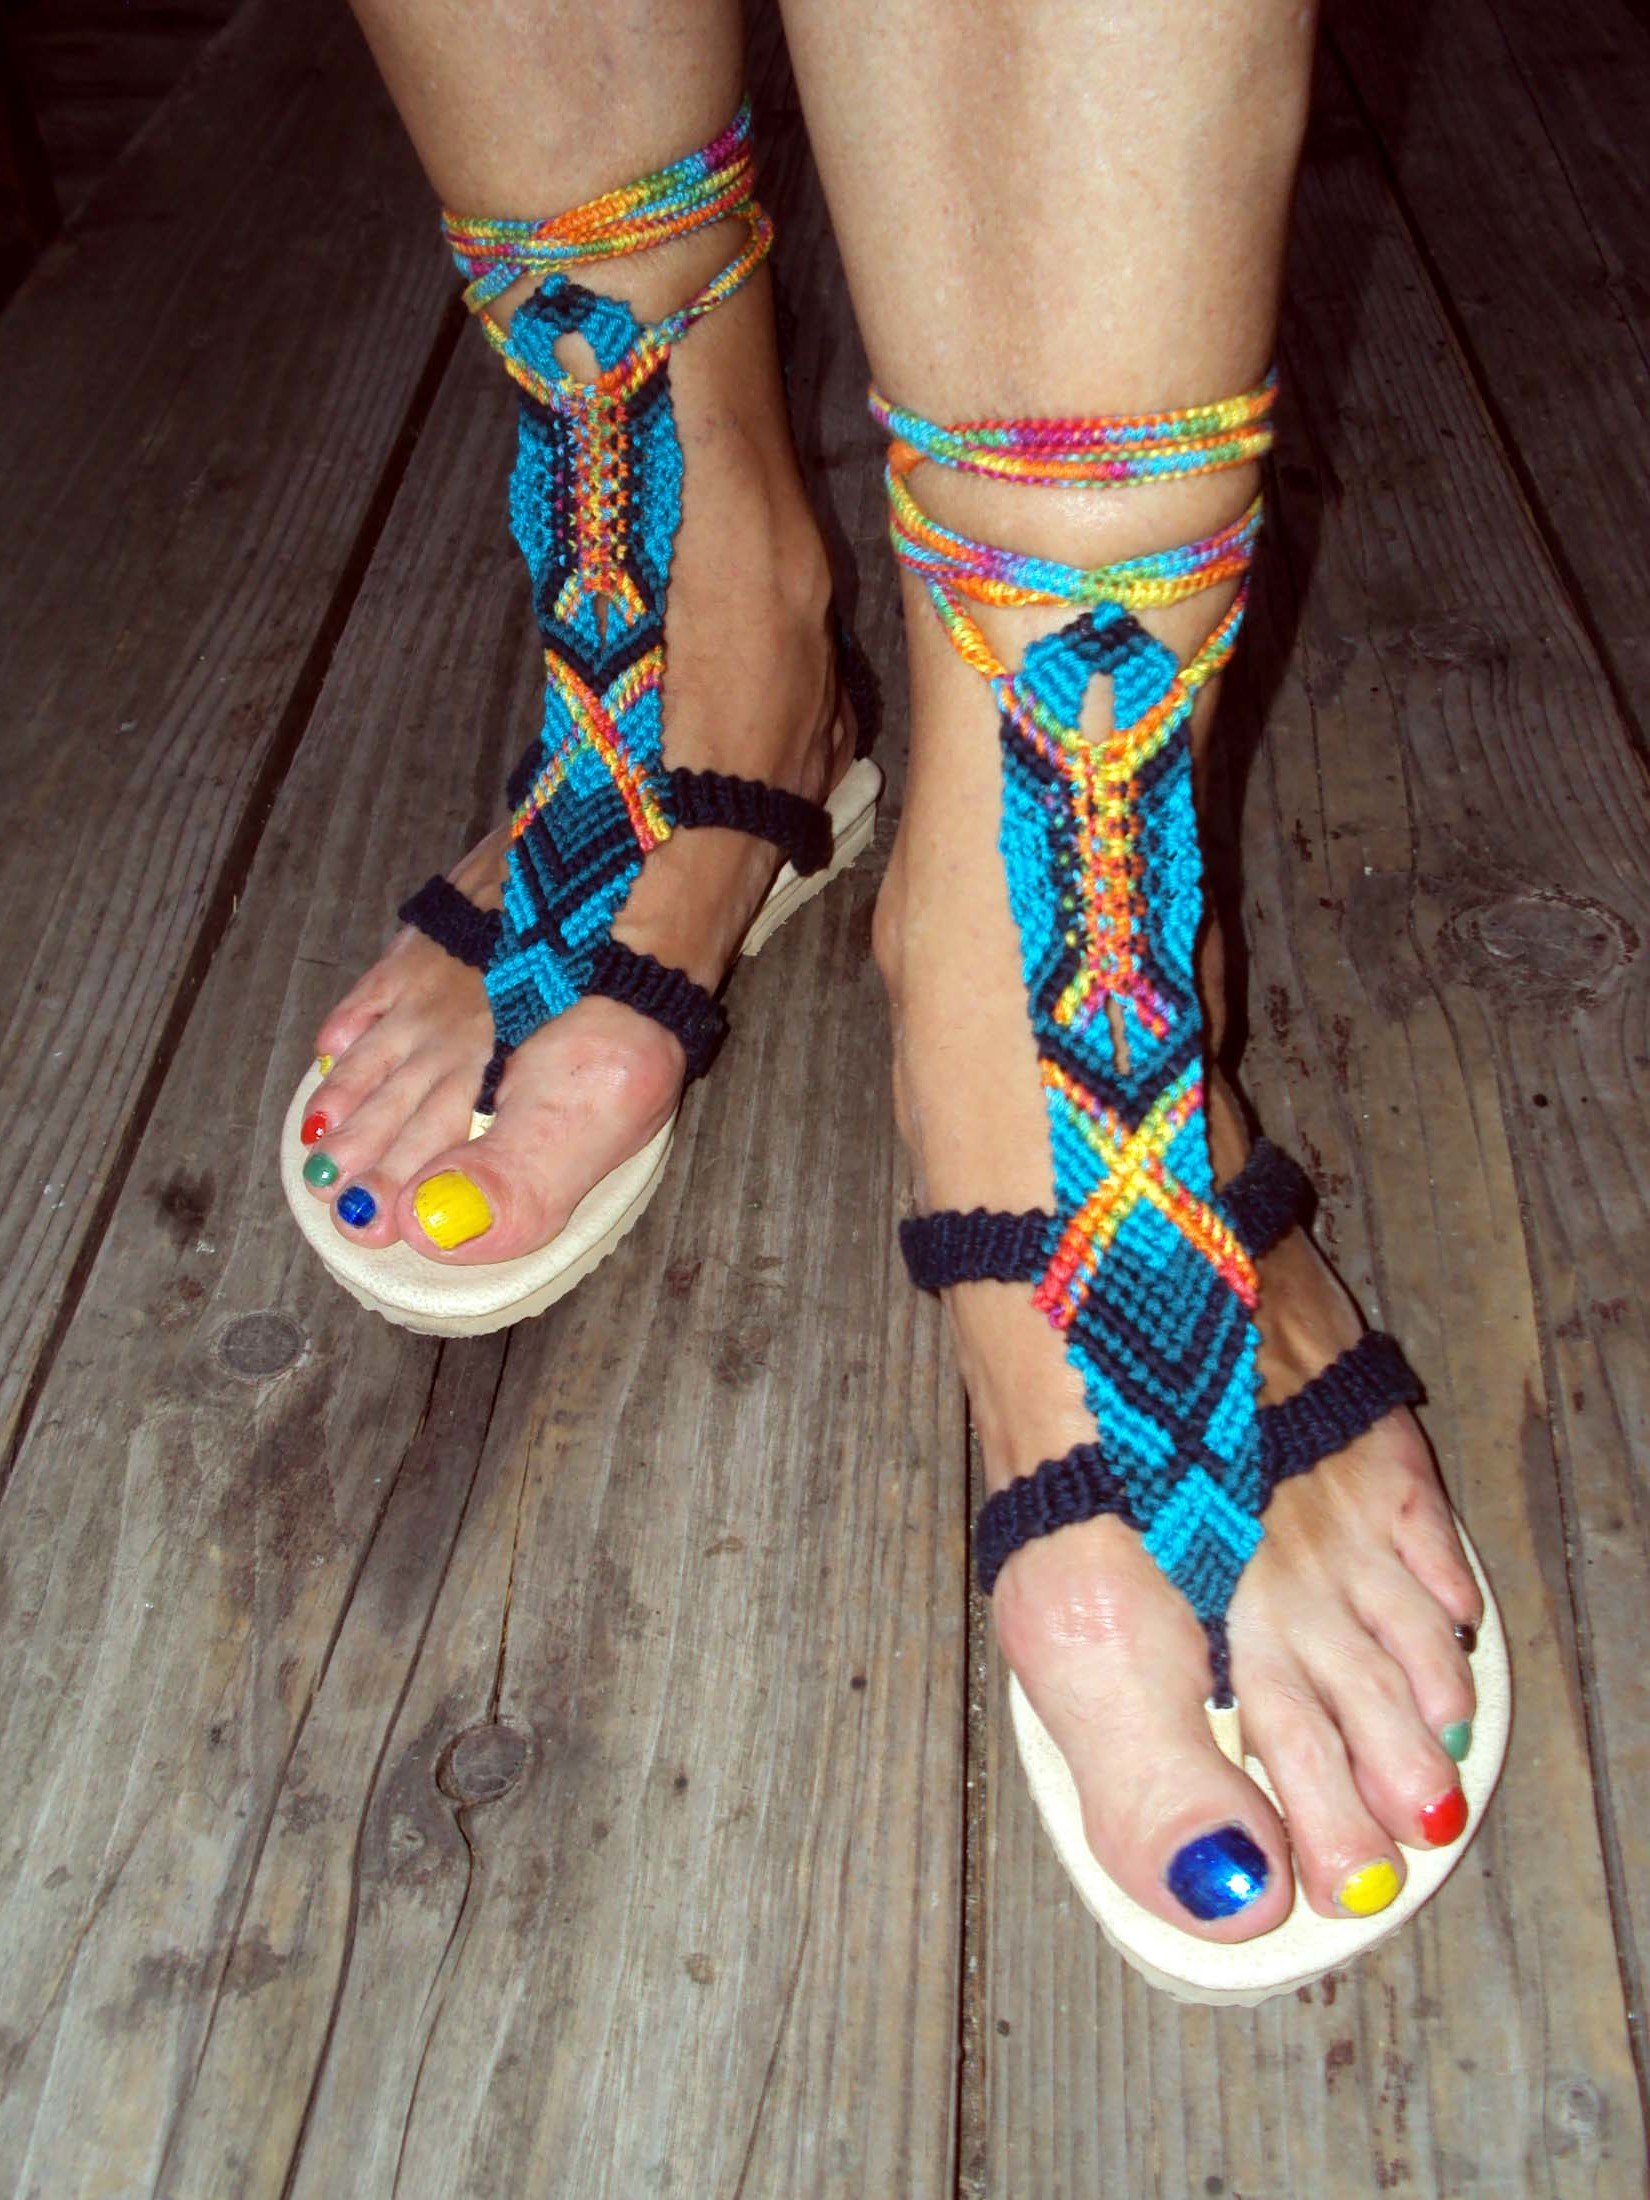 Selvknyttede sandaler er et skikkelig blikkfang